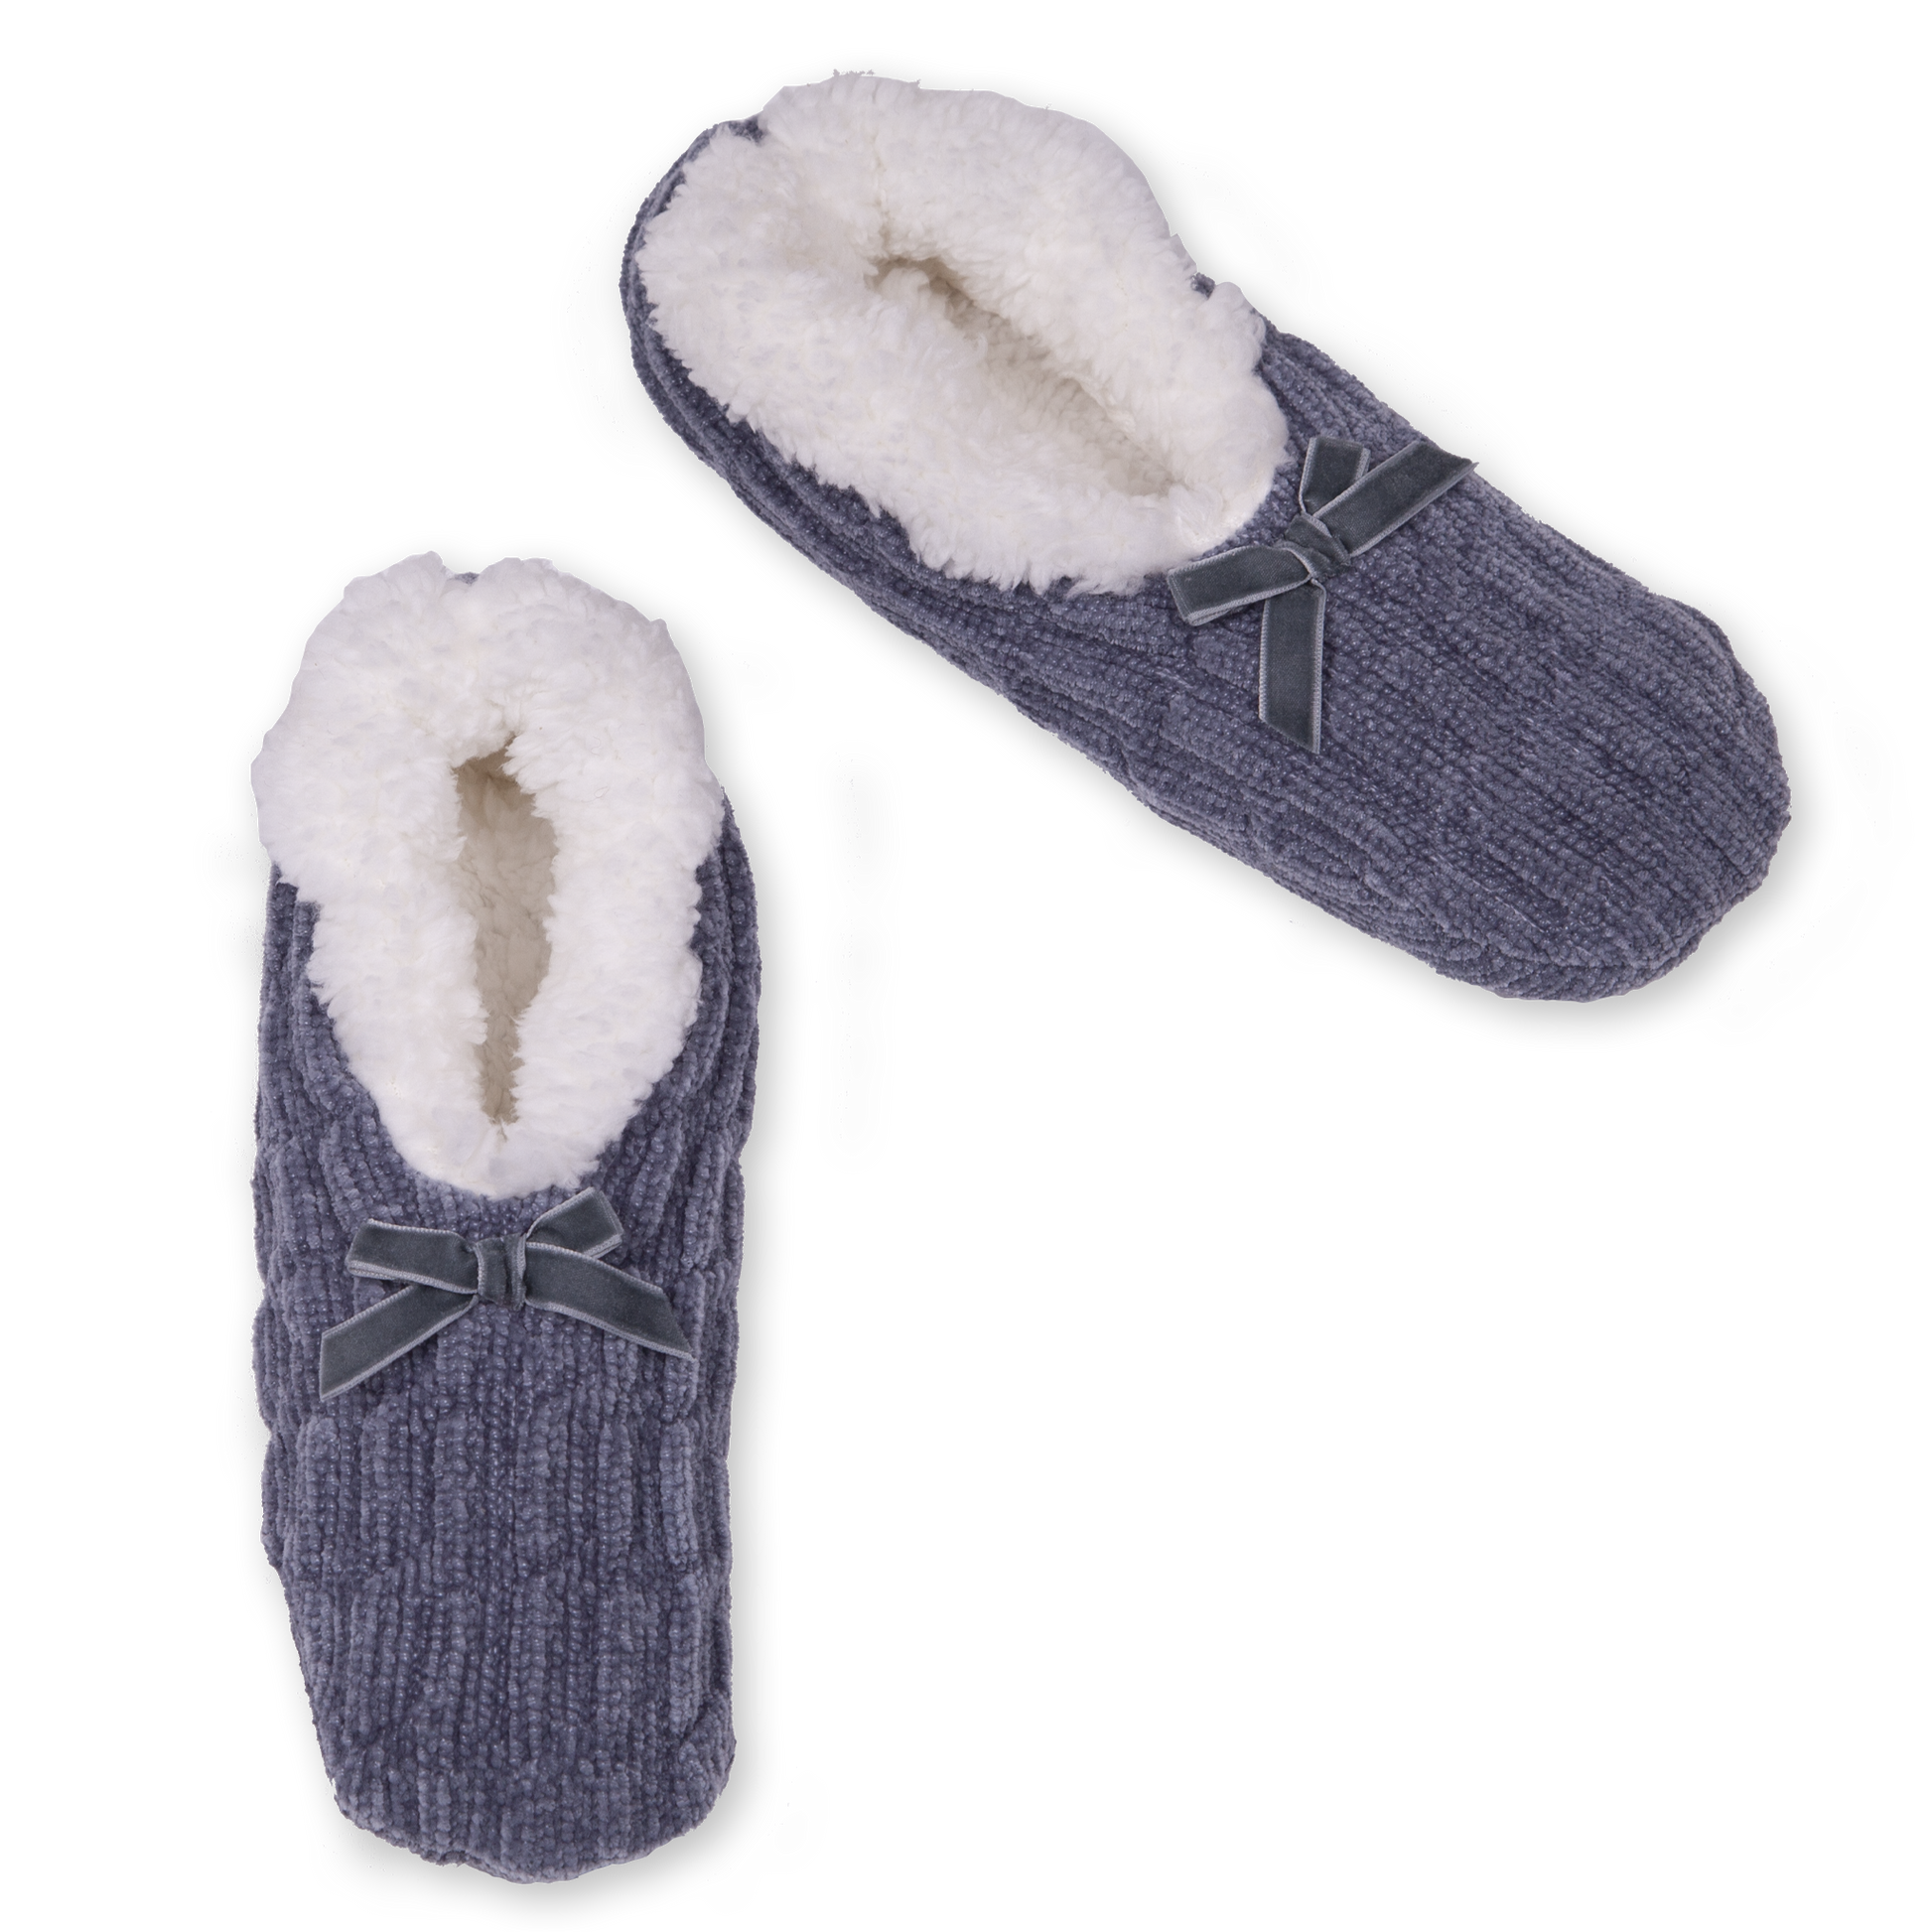 Fuzzy Anti-Slip Socks for Women Girls Non Slip Slipper Socks with Grippers,  Cozy Slipper Socks Gifts For Women